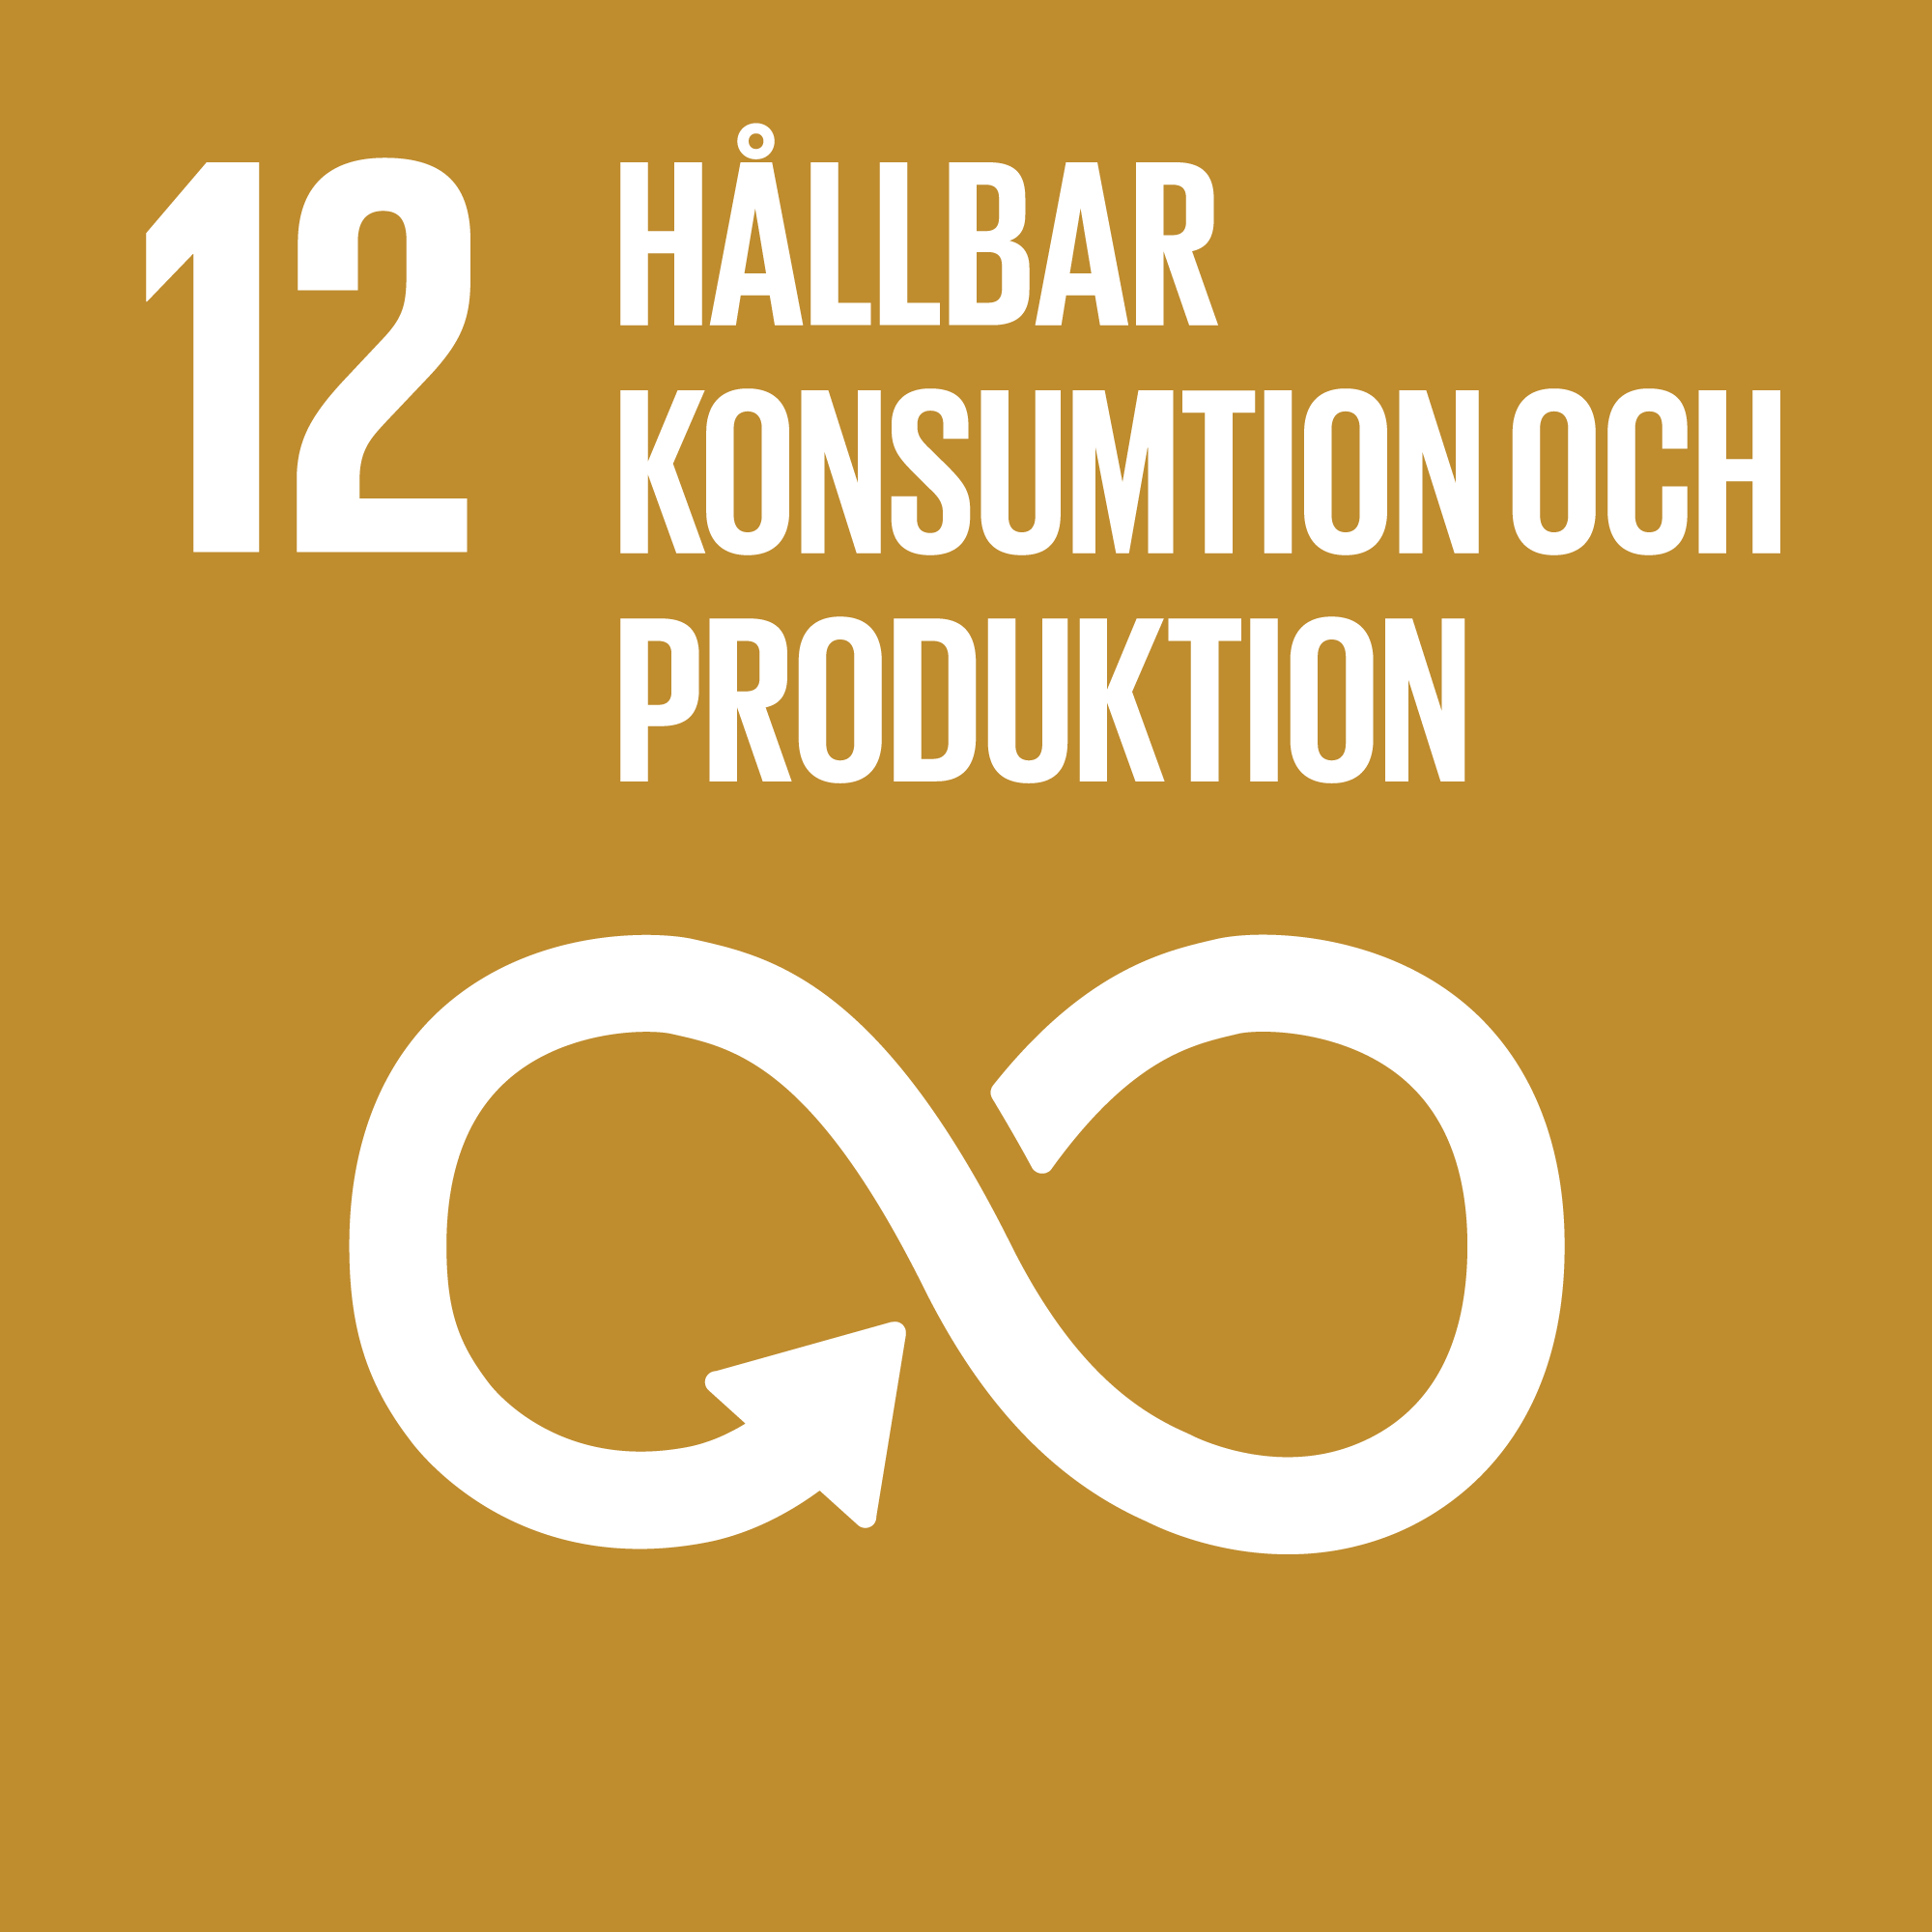 12-hallbar-konsumtion-och-produktion-logo.png